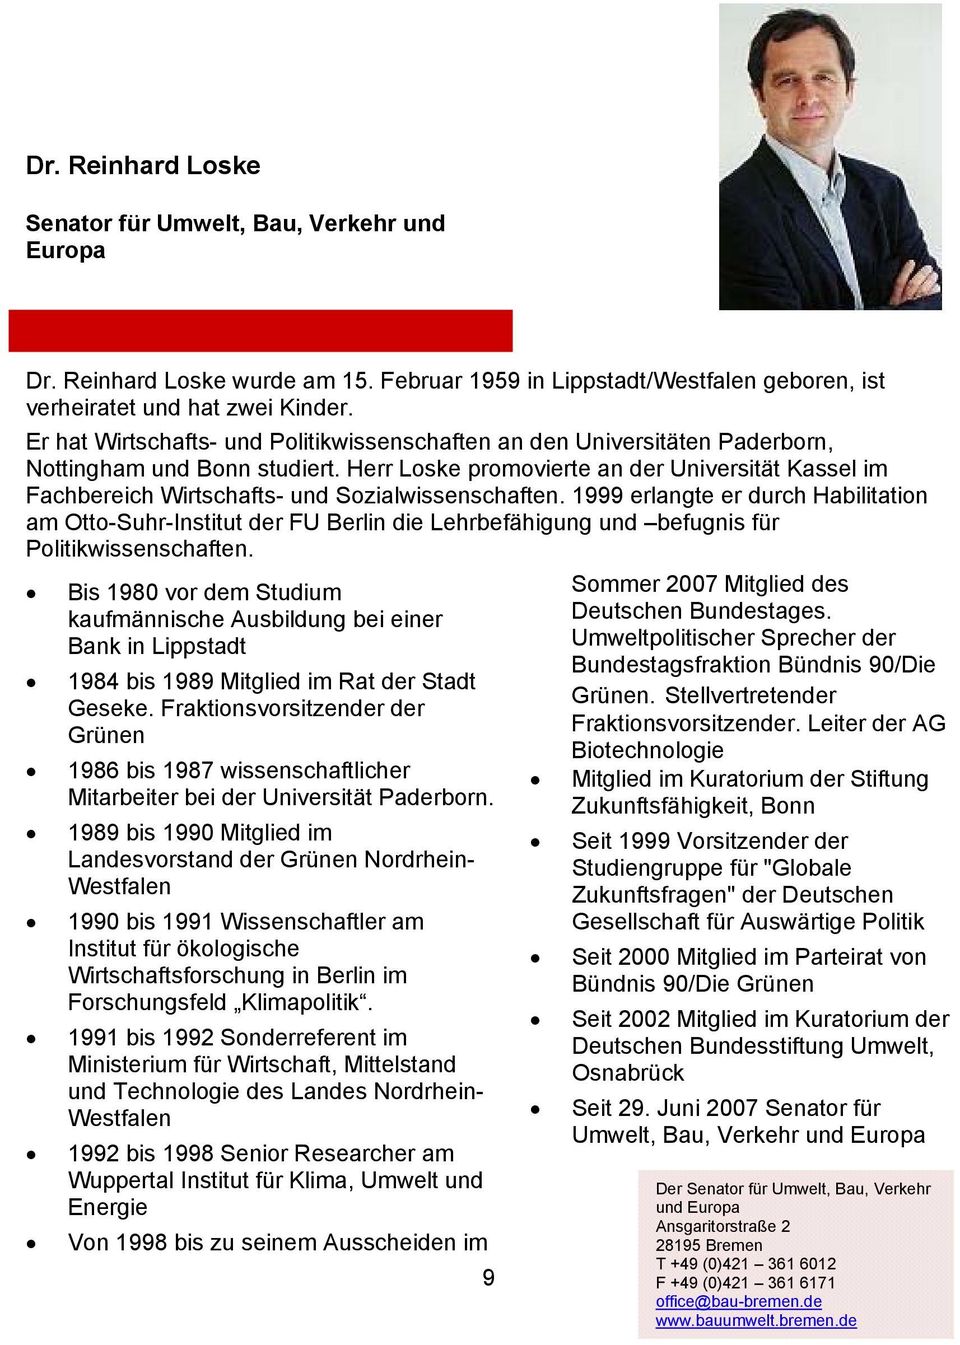 Herr Loske promovierte an der Universität Kassel im Fachbereich Wirtschafts- und Sozialwissenschaften.